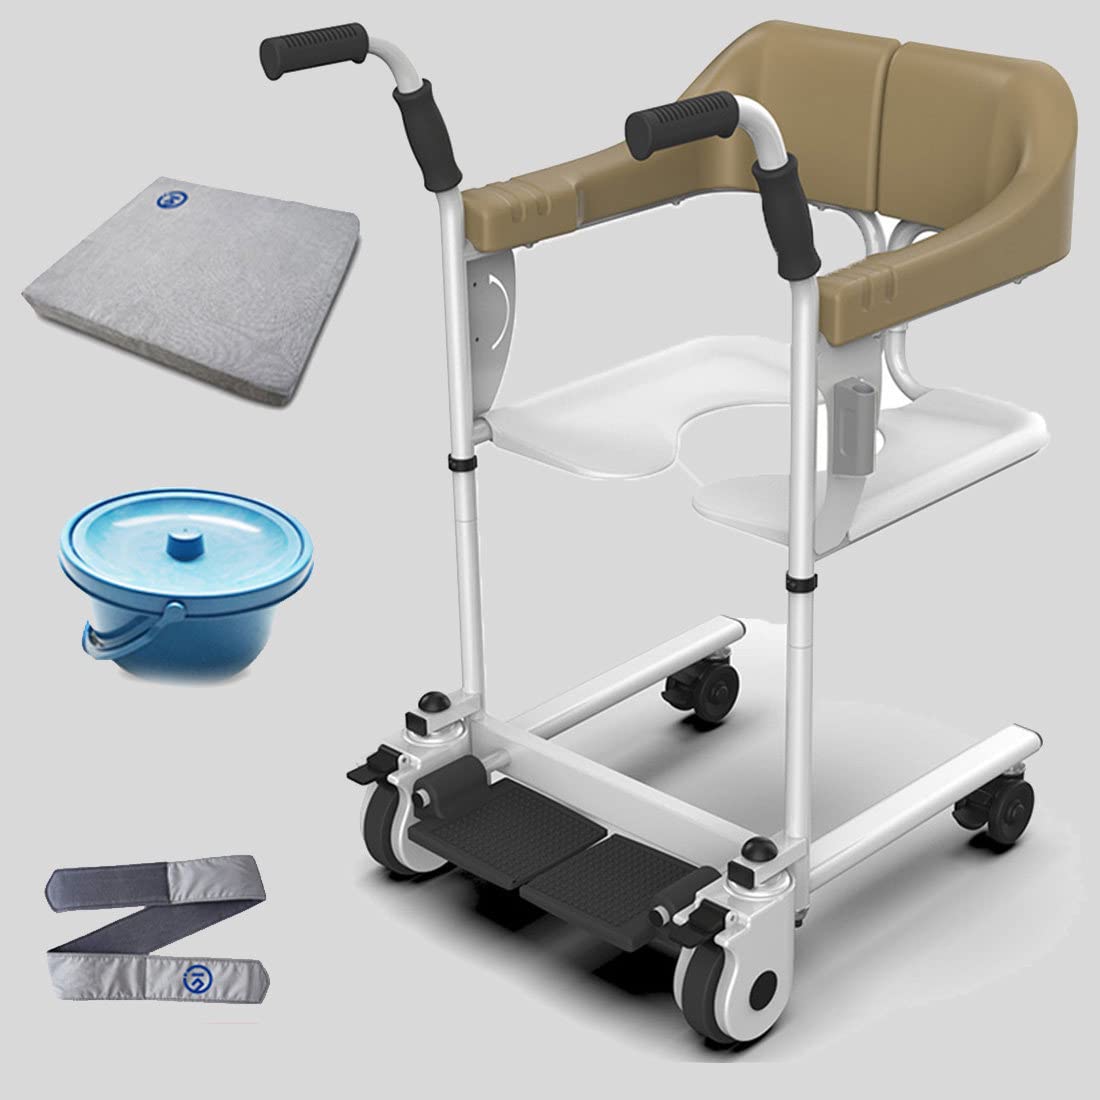 Patientenlift-Transfer-MobilitätsstuhlTransferstuhl, Transferrollstuhl, Rollstuhllift für ältere Menschen mit Behinderungen, Transferduschstuhl, Patiententransferstuhl mit Toilette und Kisse